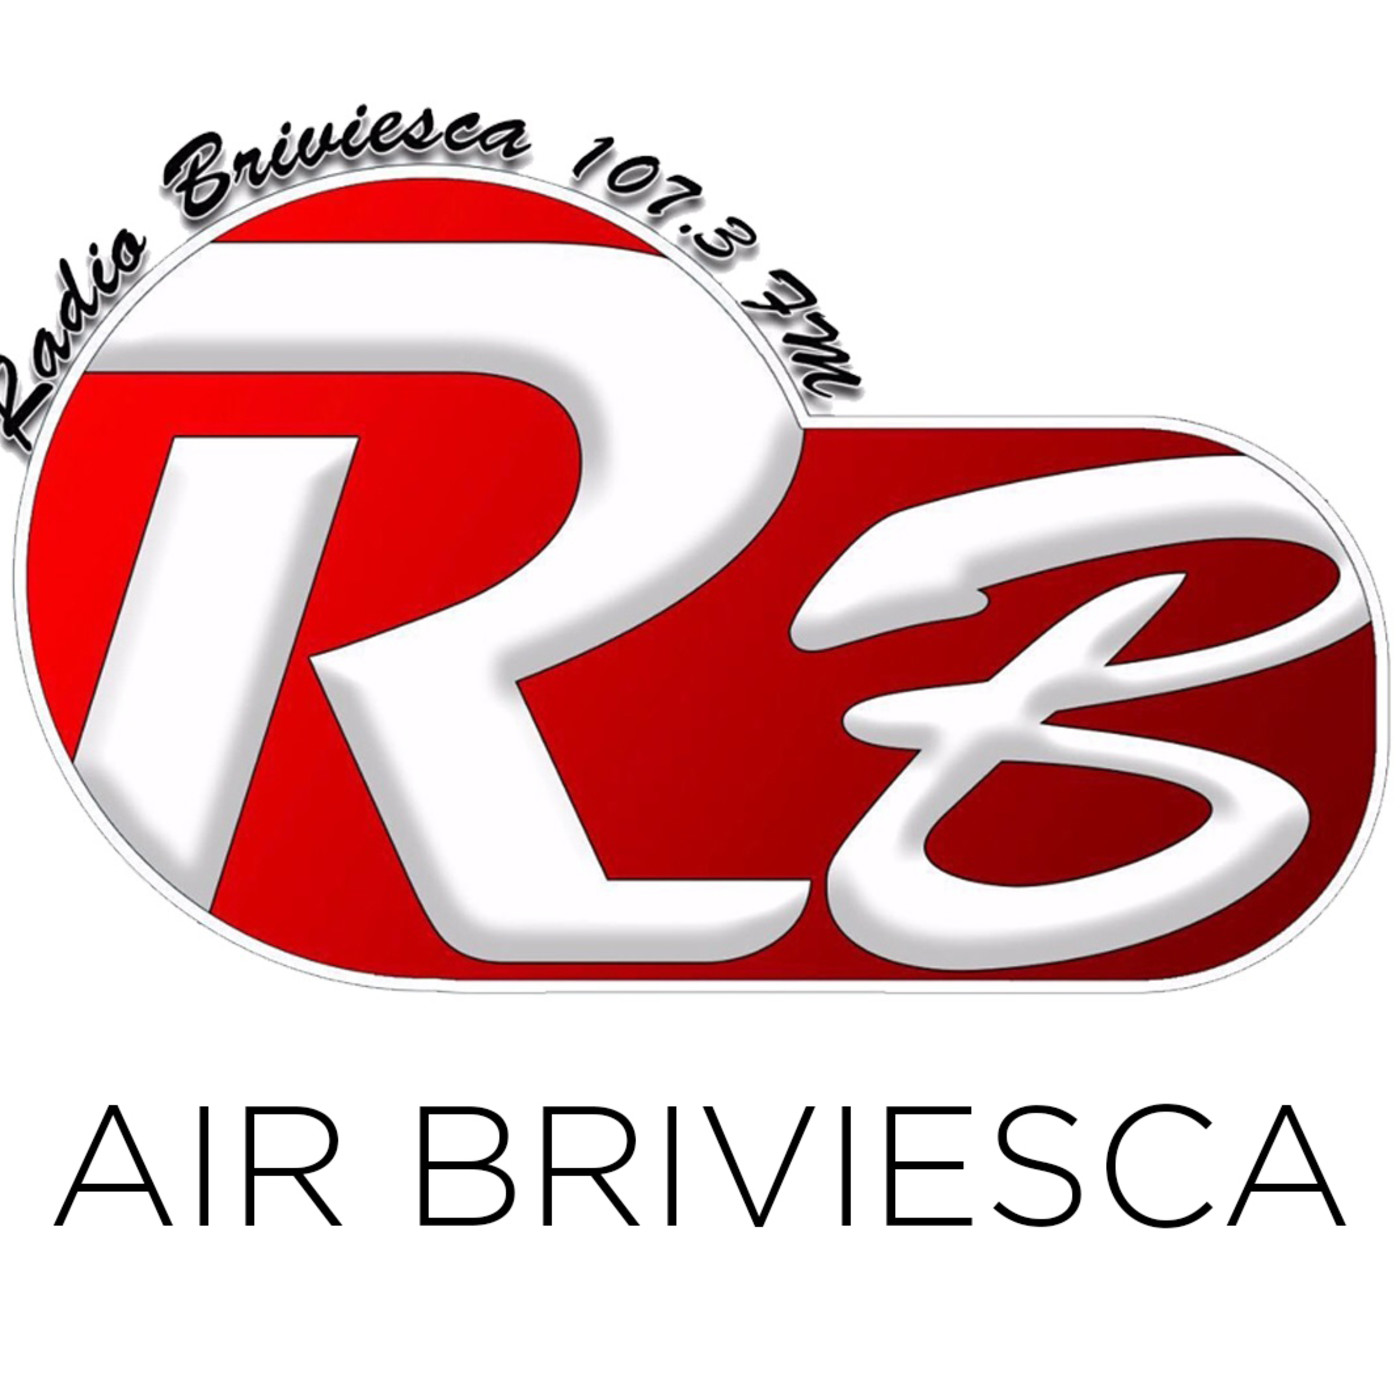 Air Briviesca 18/03/2018